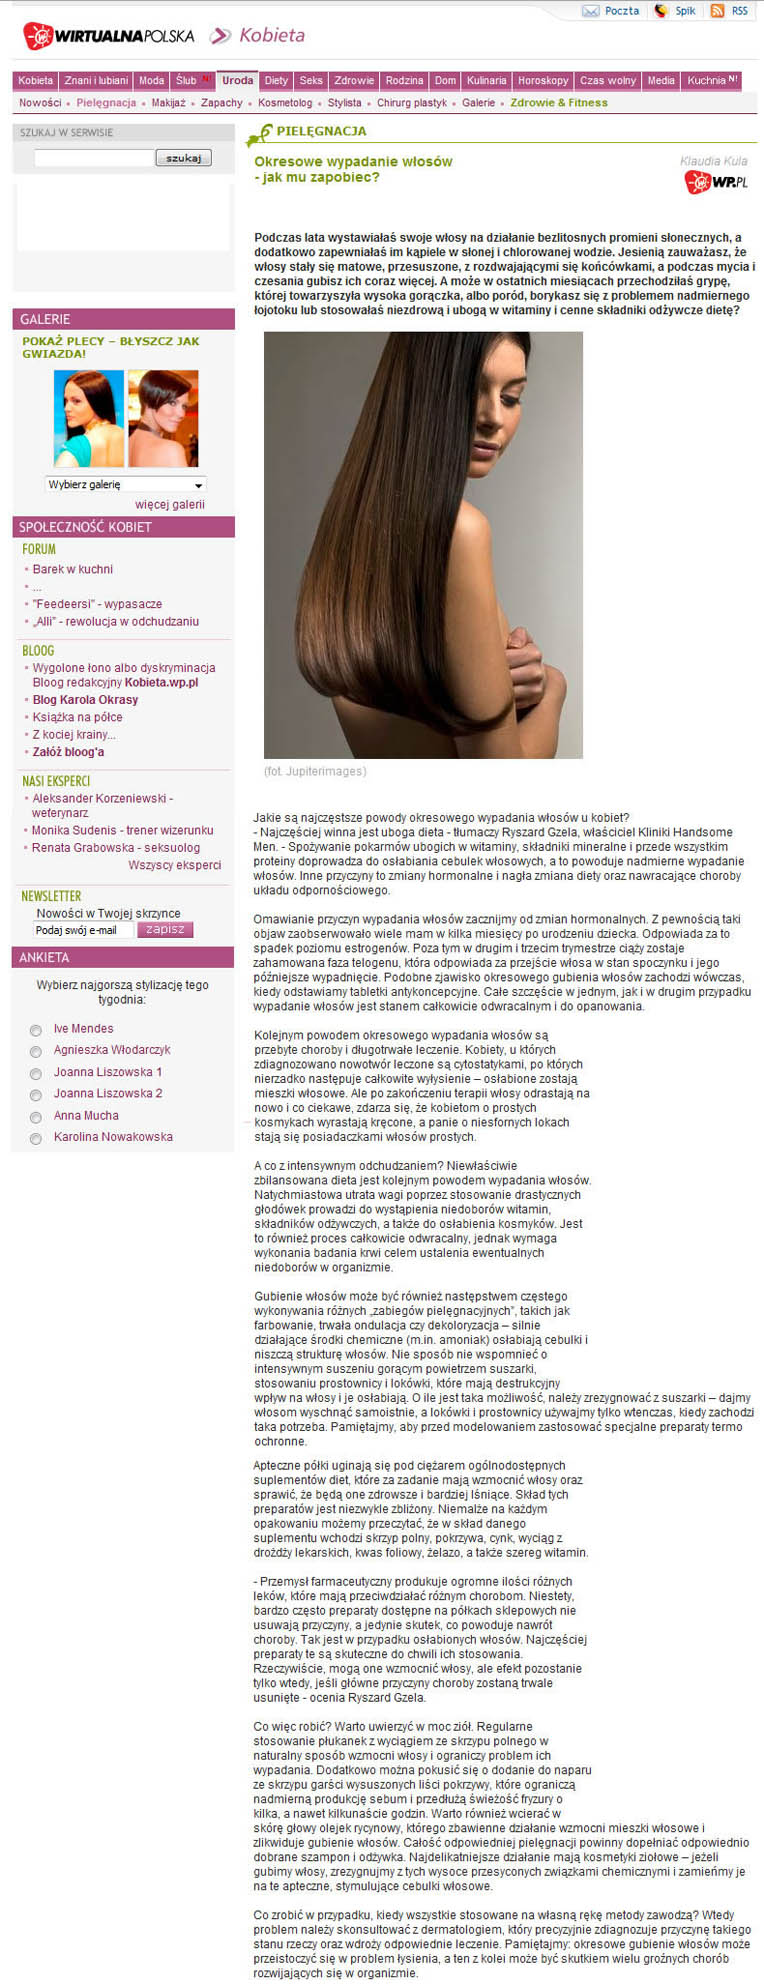 Wp.pl – Okresowe wypadanie włosów